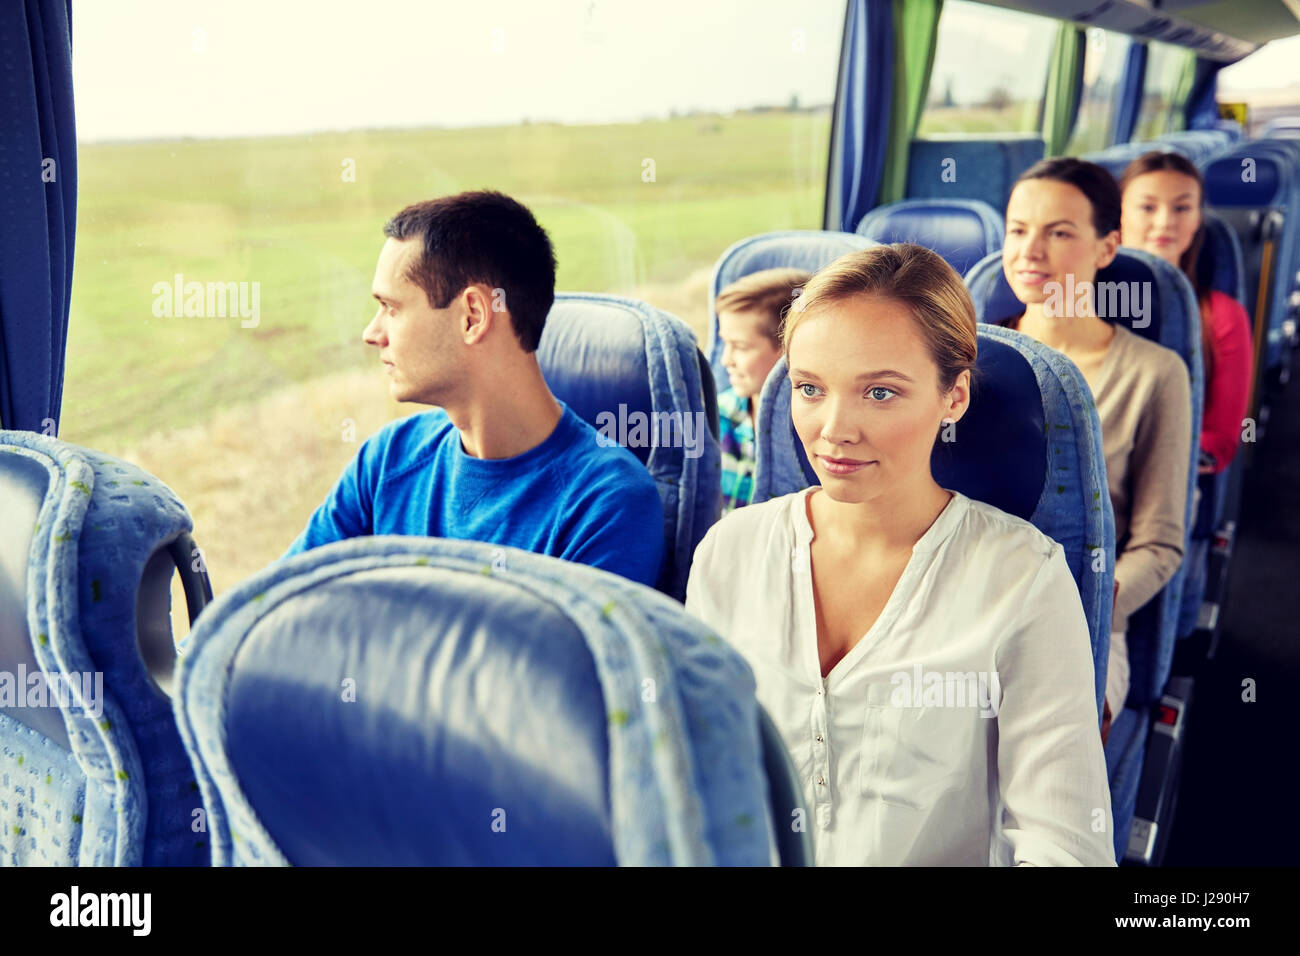 Gruppe von Personen oder Touristen im Reisebus Stockfoto